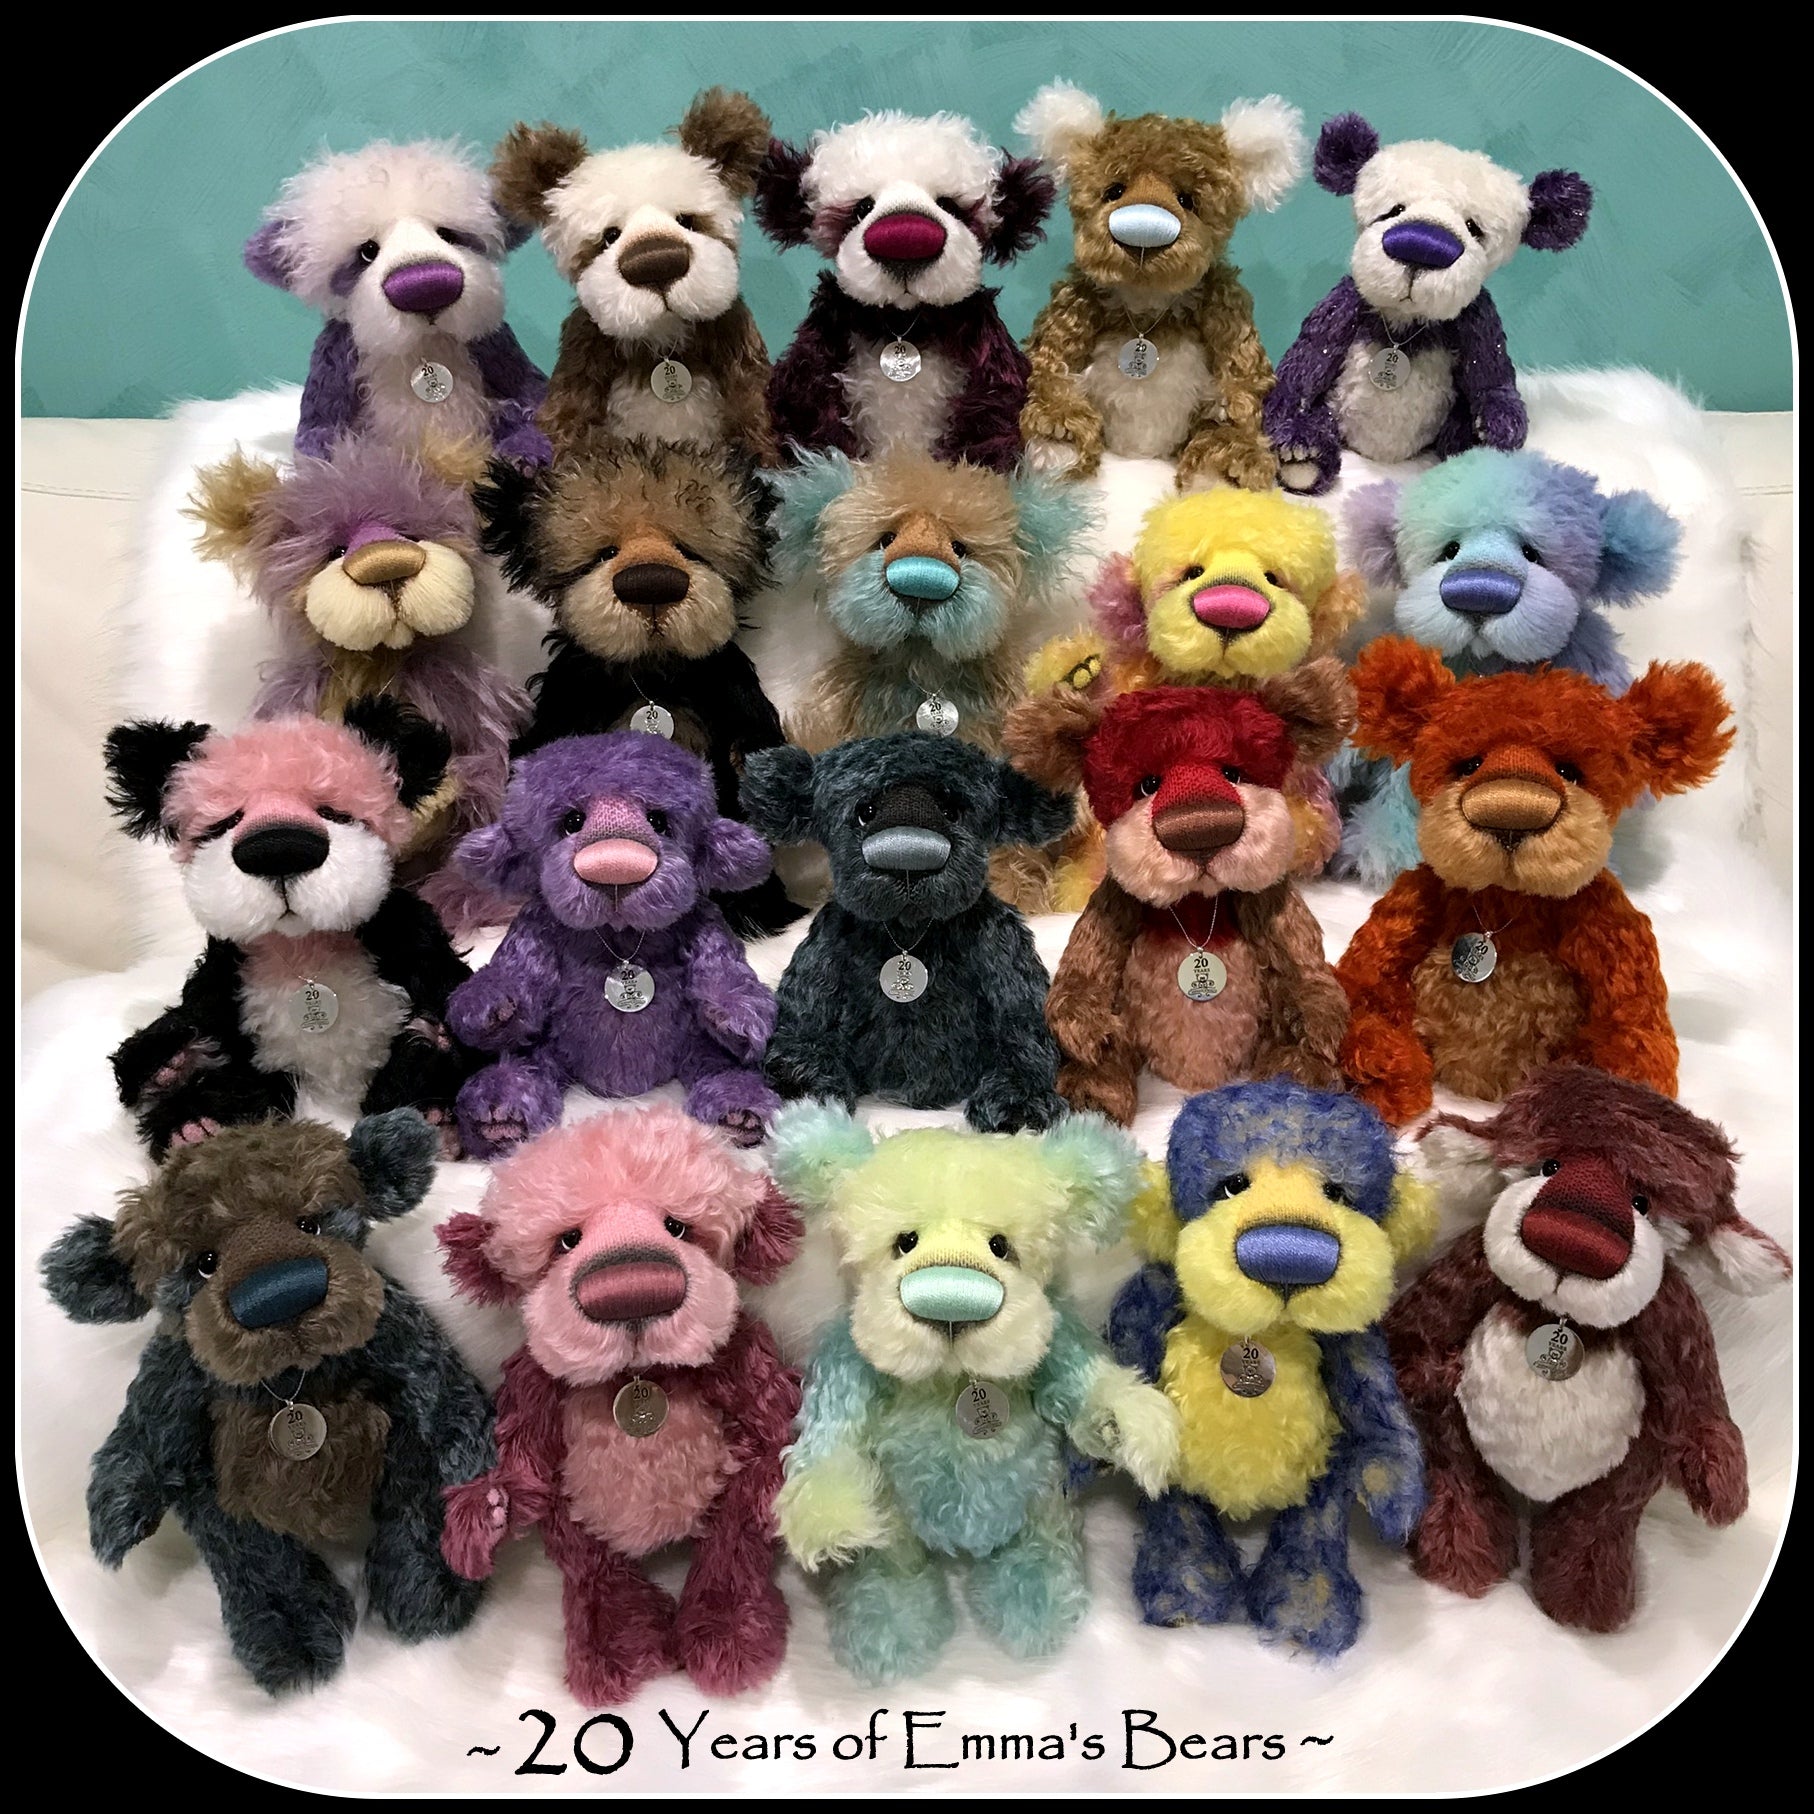 Talon - 20 Years of Emma's Bears Commemorative Teddy - OOAK in a series